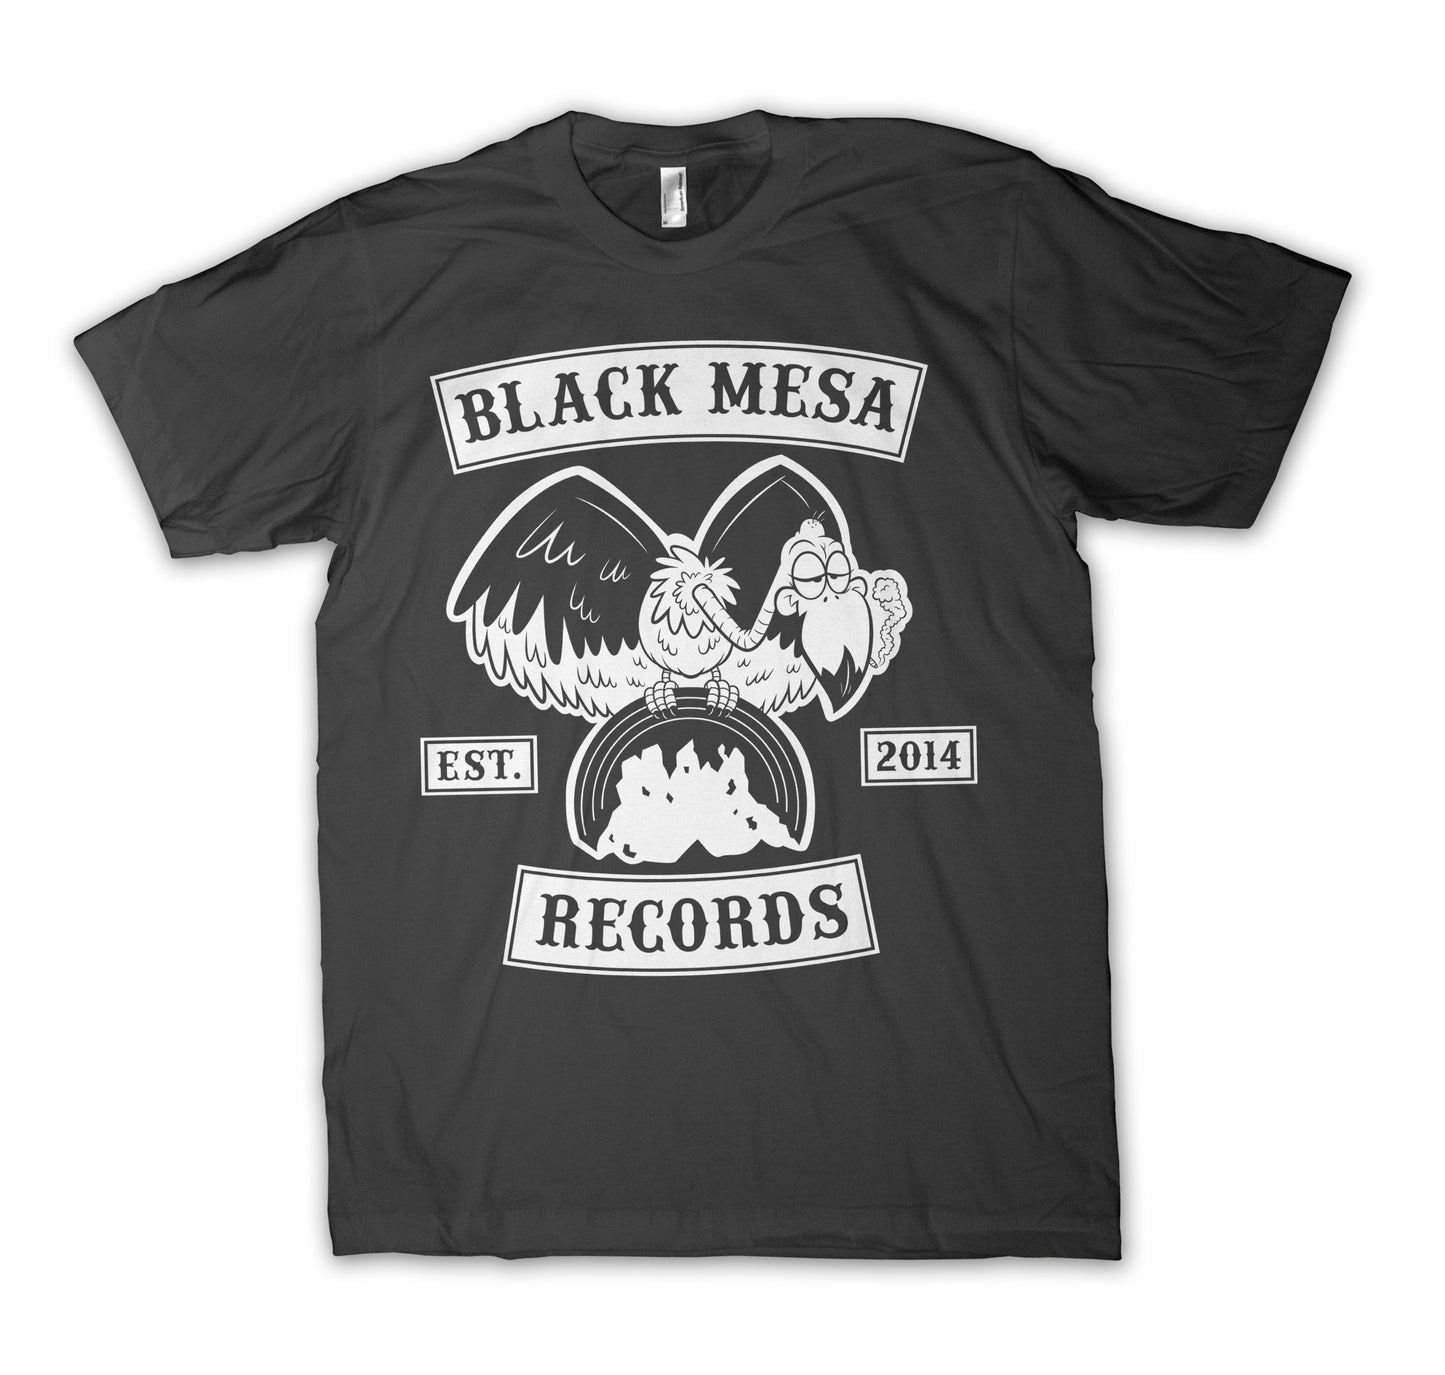 Black Mesa Records - Vulture T-Shirt - Black Mesa Records